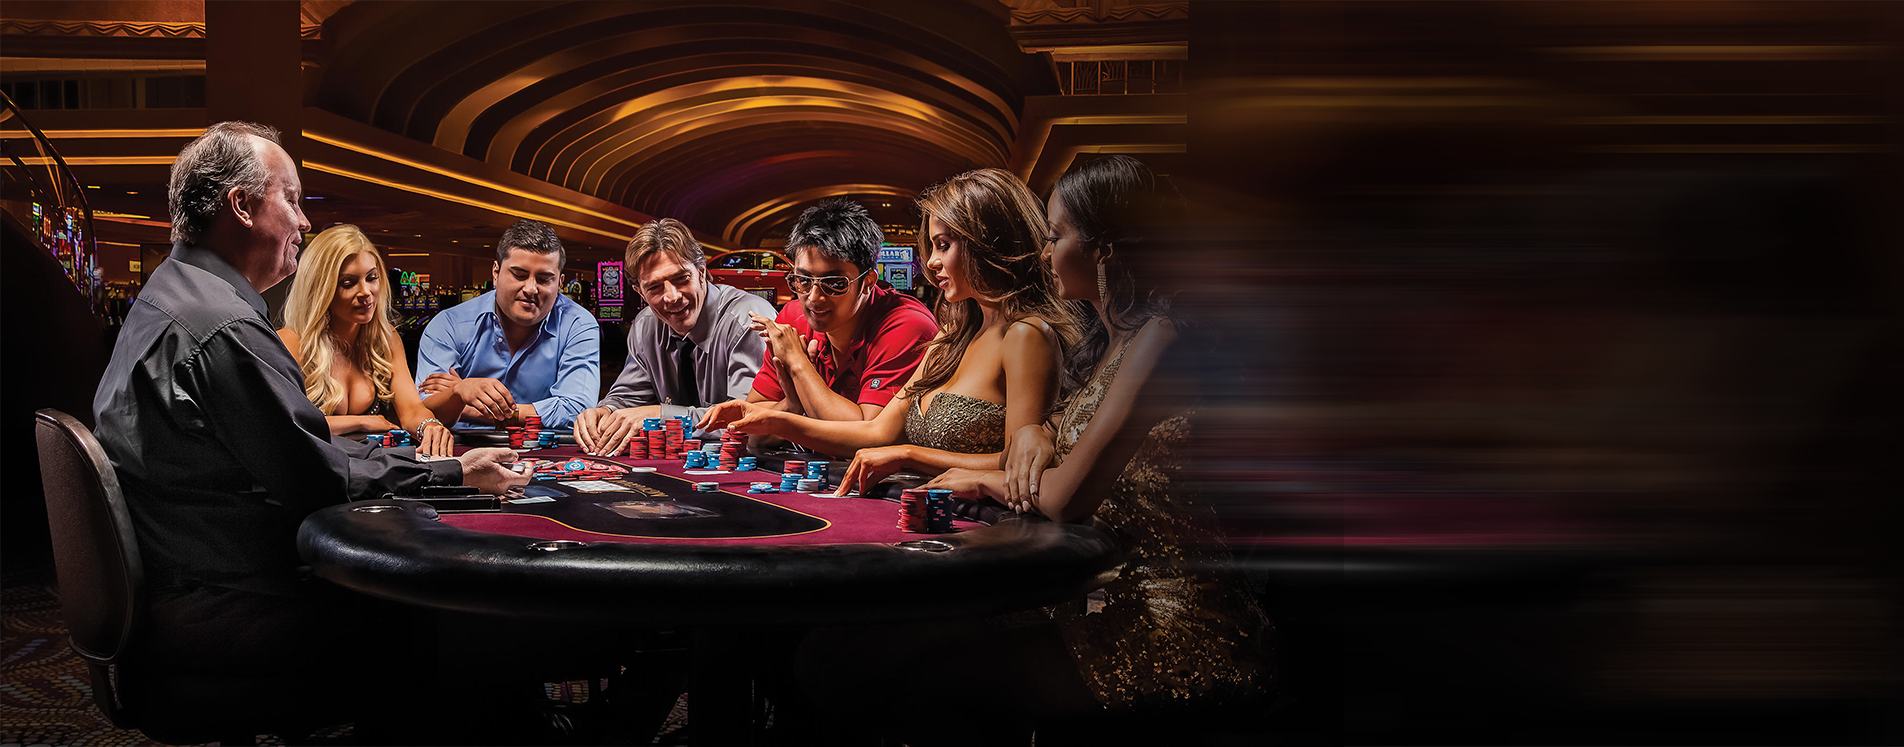 Смотреть казино онлайн бесплатно в хорошем качестве hd 720 покердом зеркало для входа